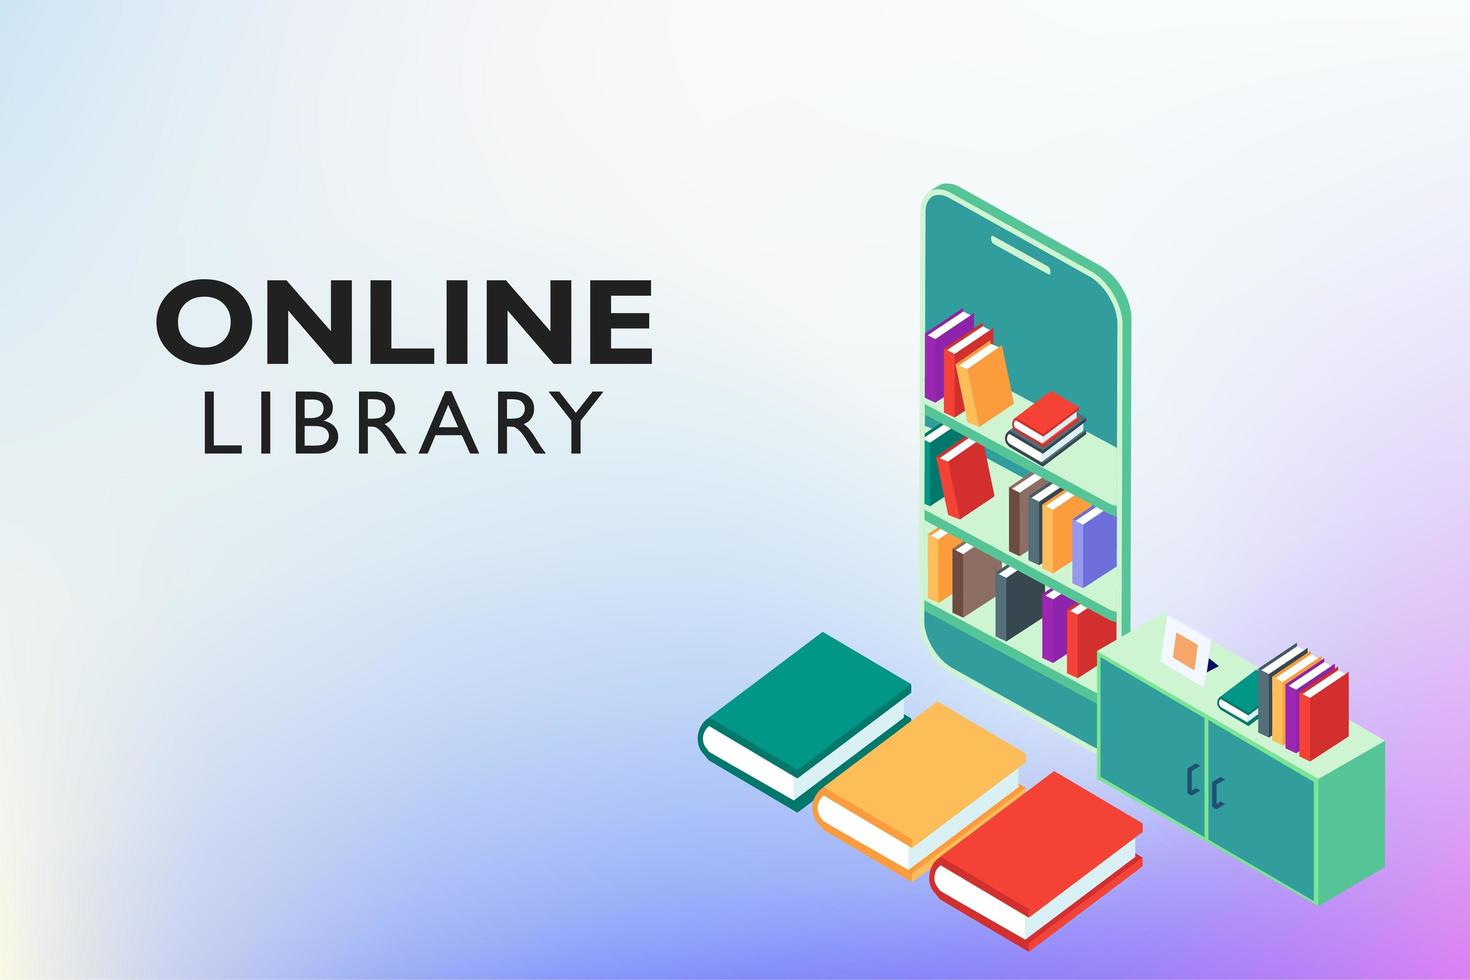 educação on-line da biblioteca digital vetor